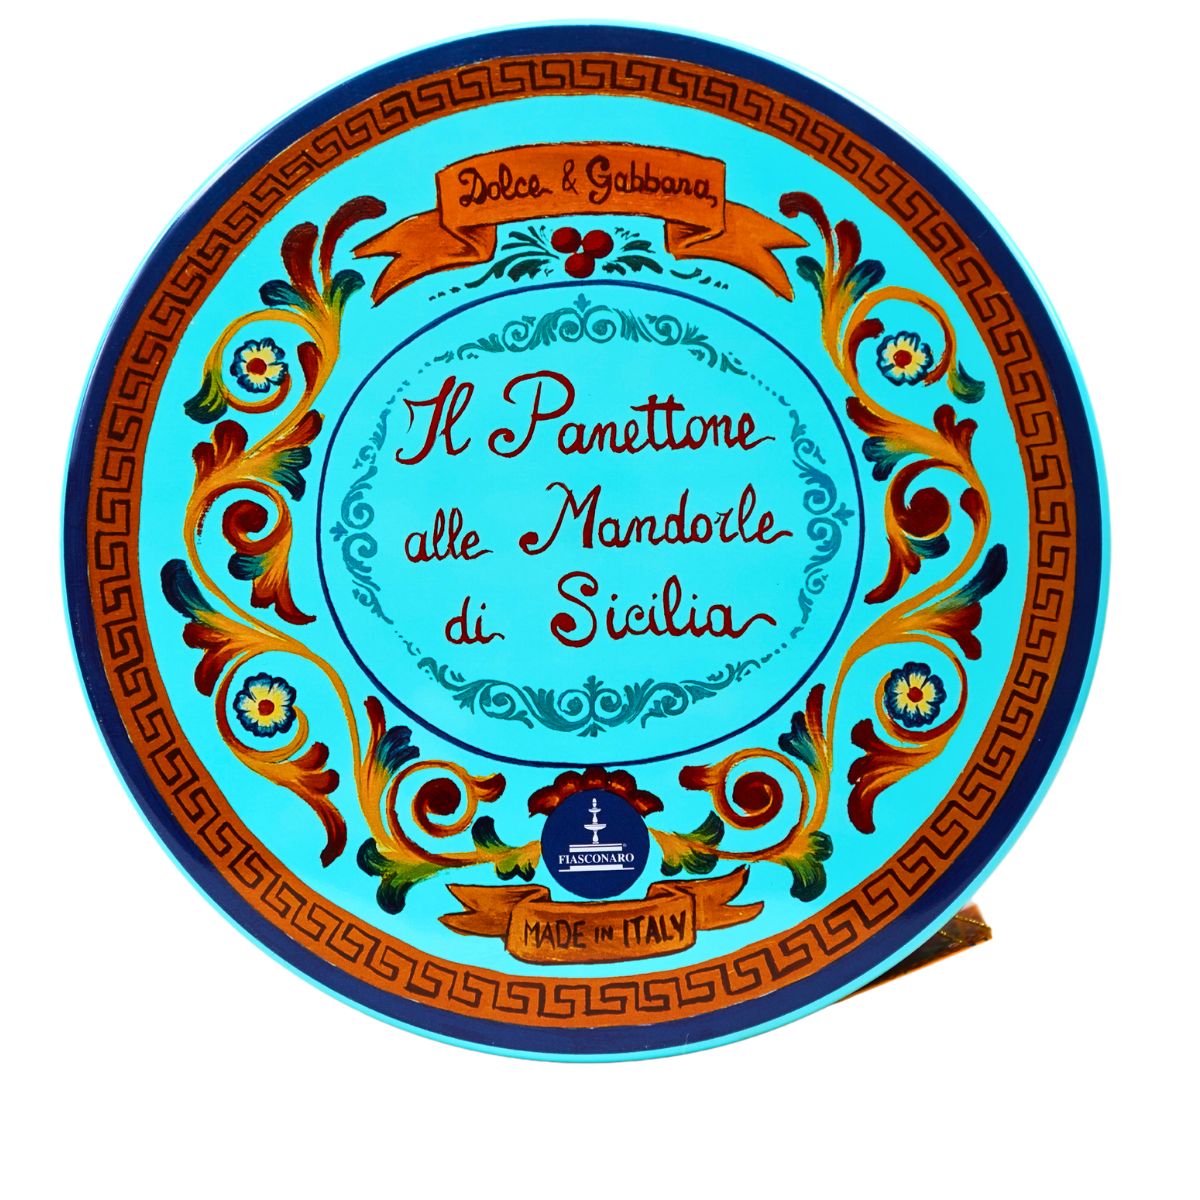 Dolce & Gabbana - Panettone alle Mandorle di Sicilia